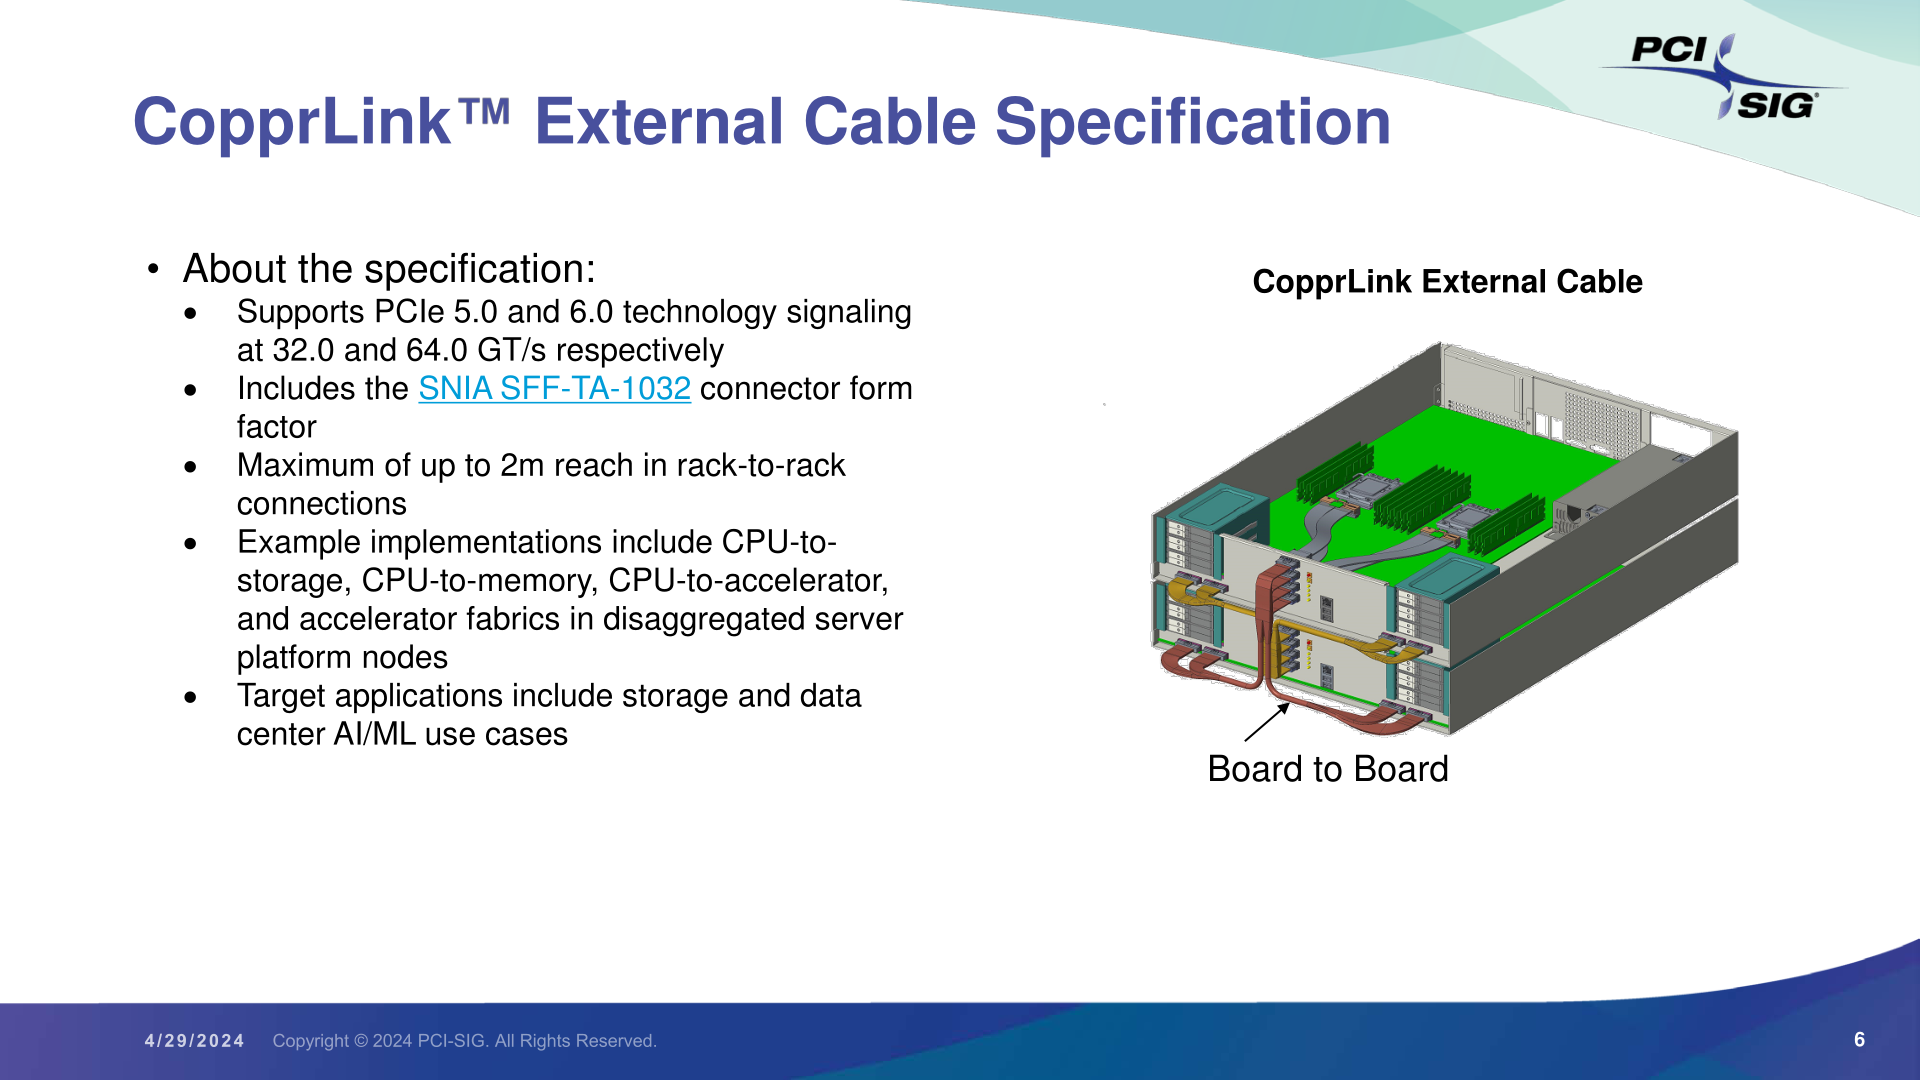 nouvelle norme CopprLink étend portée PCIe pour connexions GT/s